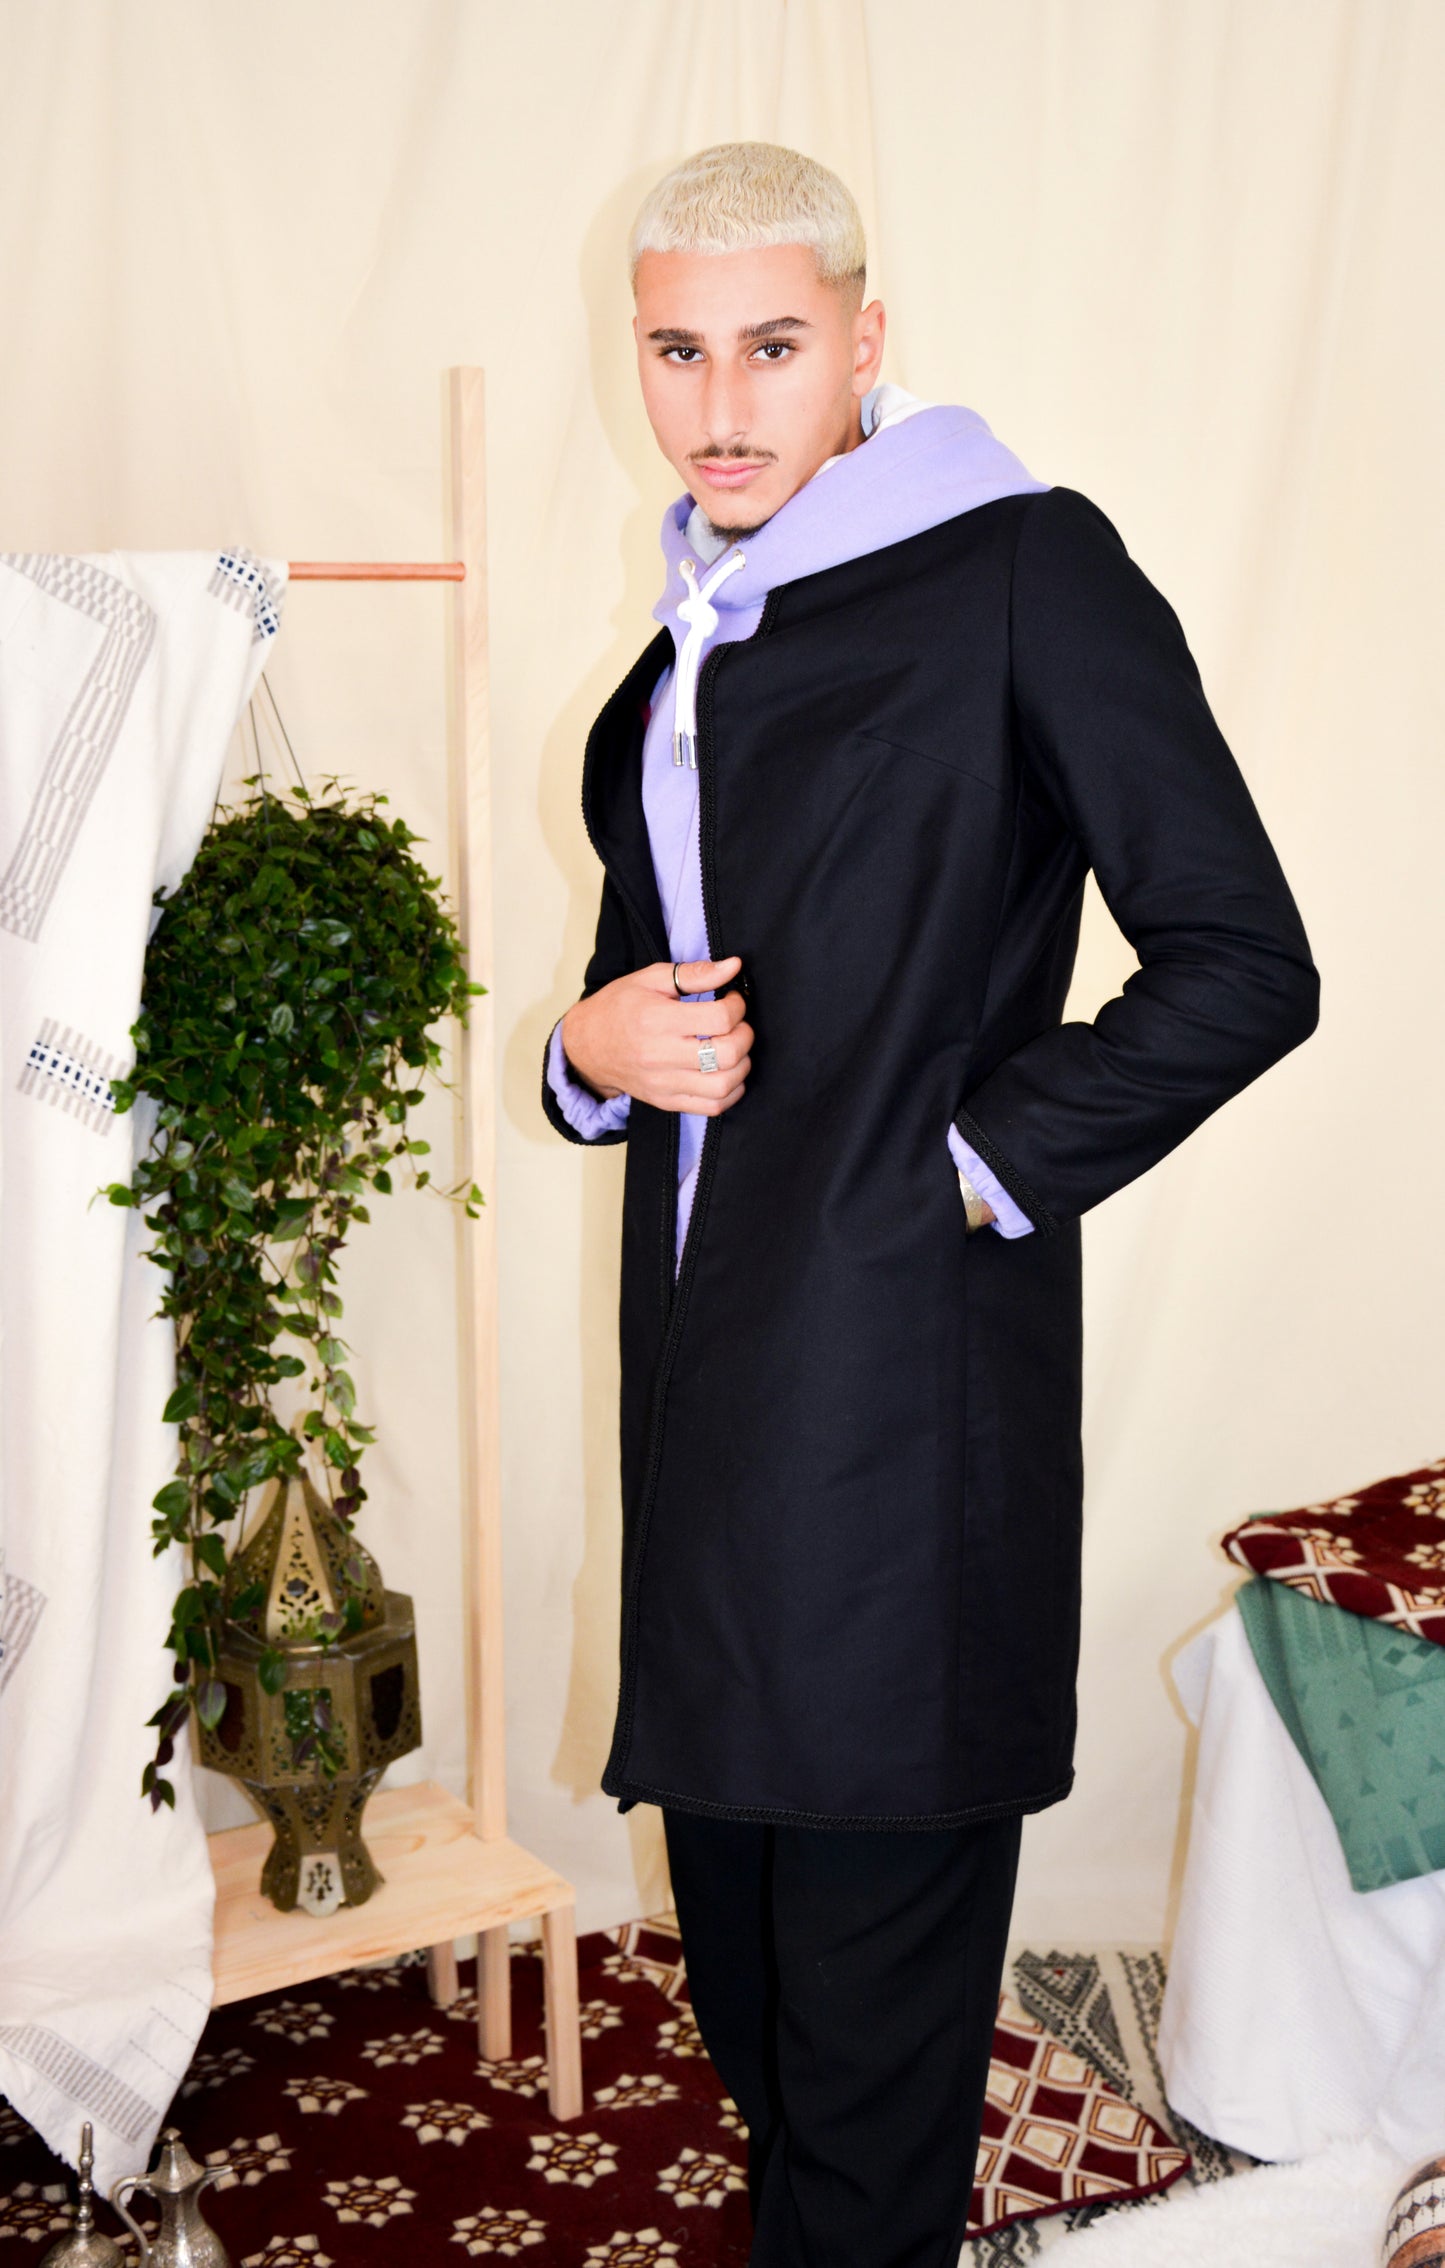 The Amwan coat